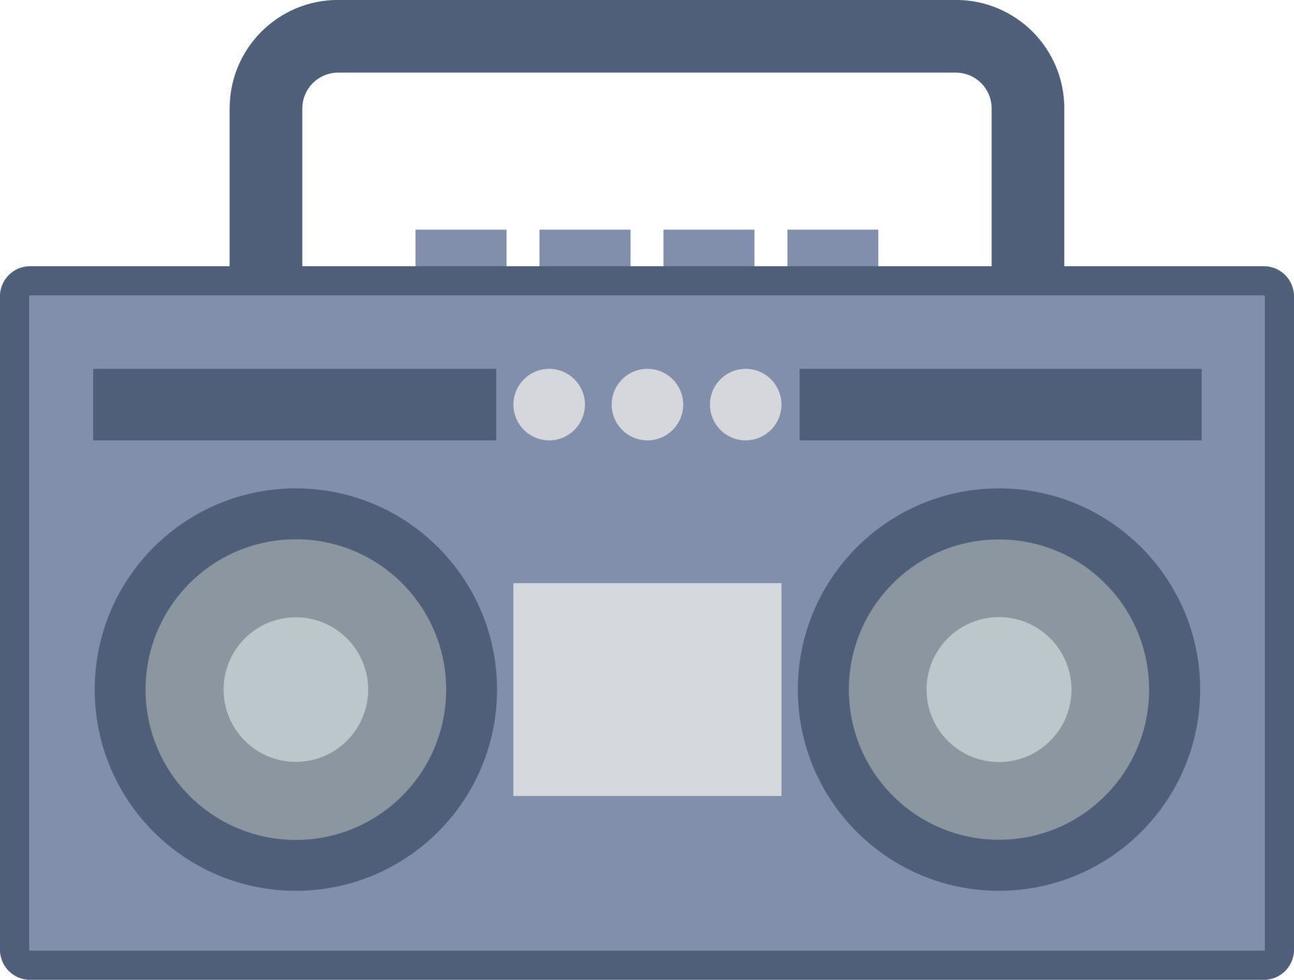 Vintage ▾ Boombox Radio icona con piatto stile per nostalgia design. grafico risorsa di vecchio stile musica Audio suono sistema. vettore illustrazione di elettronico dispositivo per musica accesoris con retrò stile